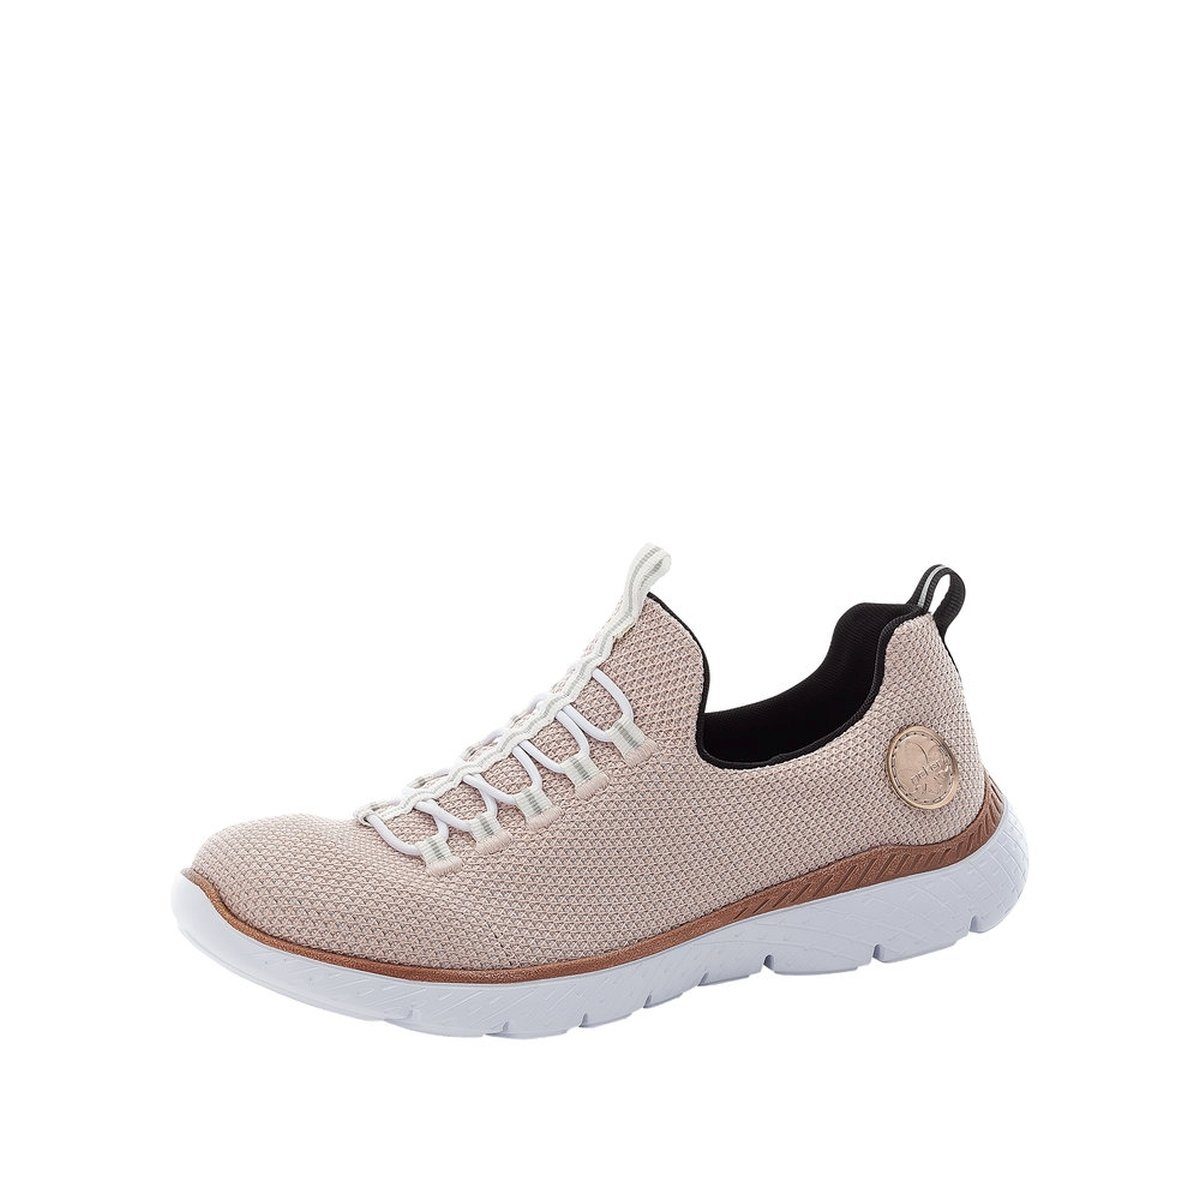 Rieker Rieker Damen Sneaker rosa Sneaker online kaufen | OTTO